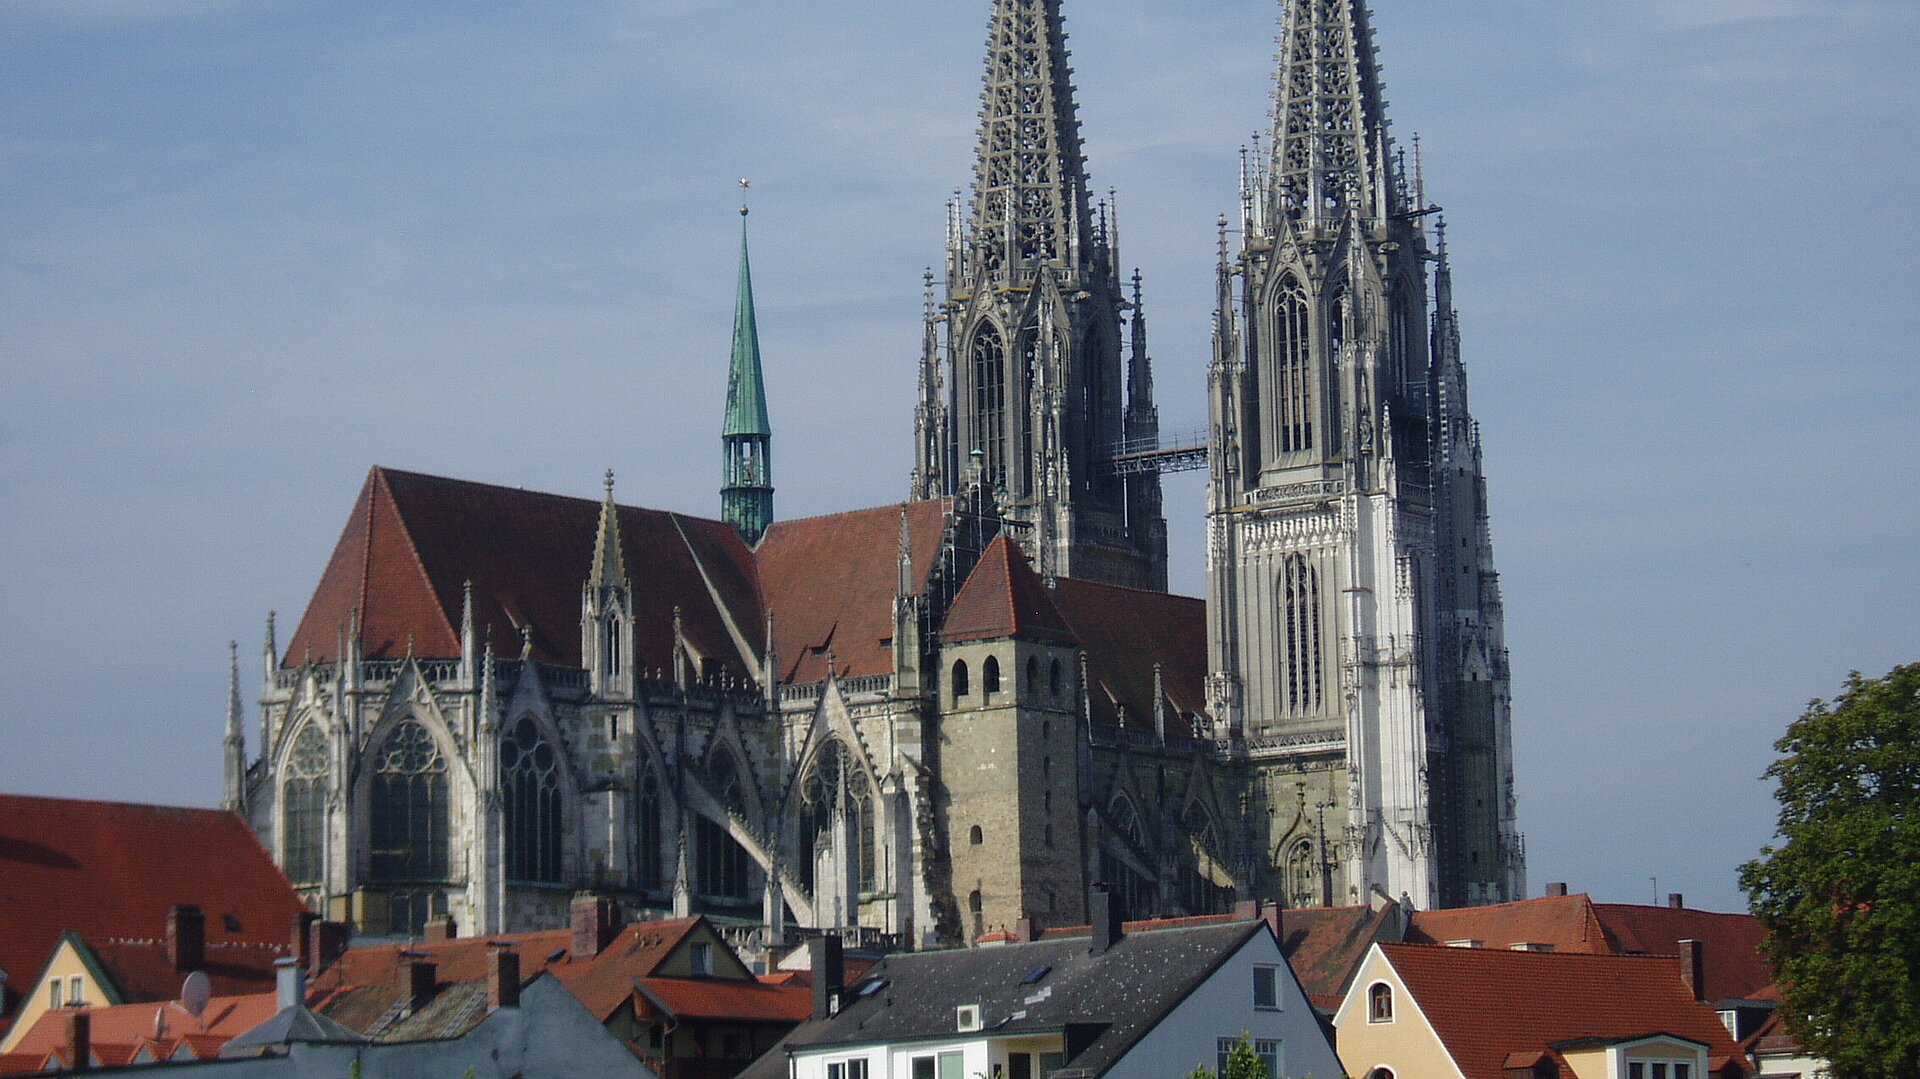 Unsere Buchtipps für Regensburg